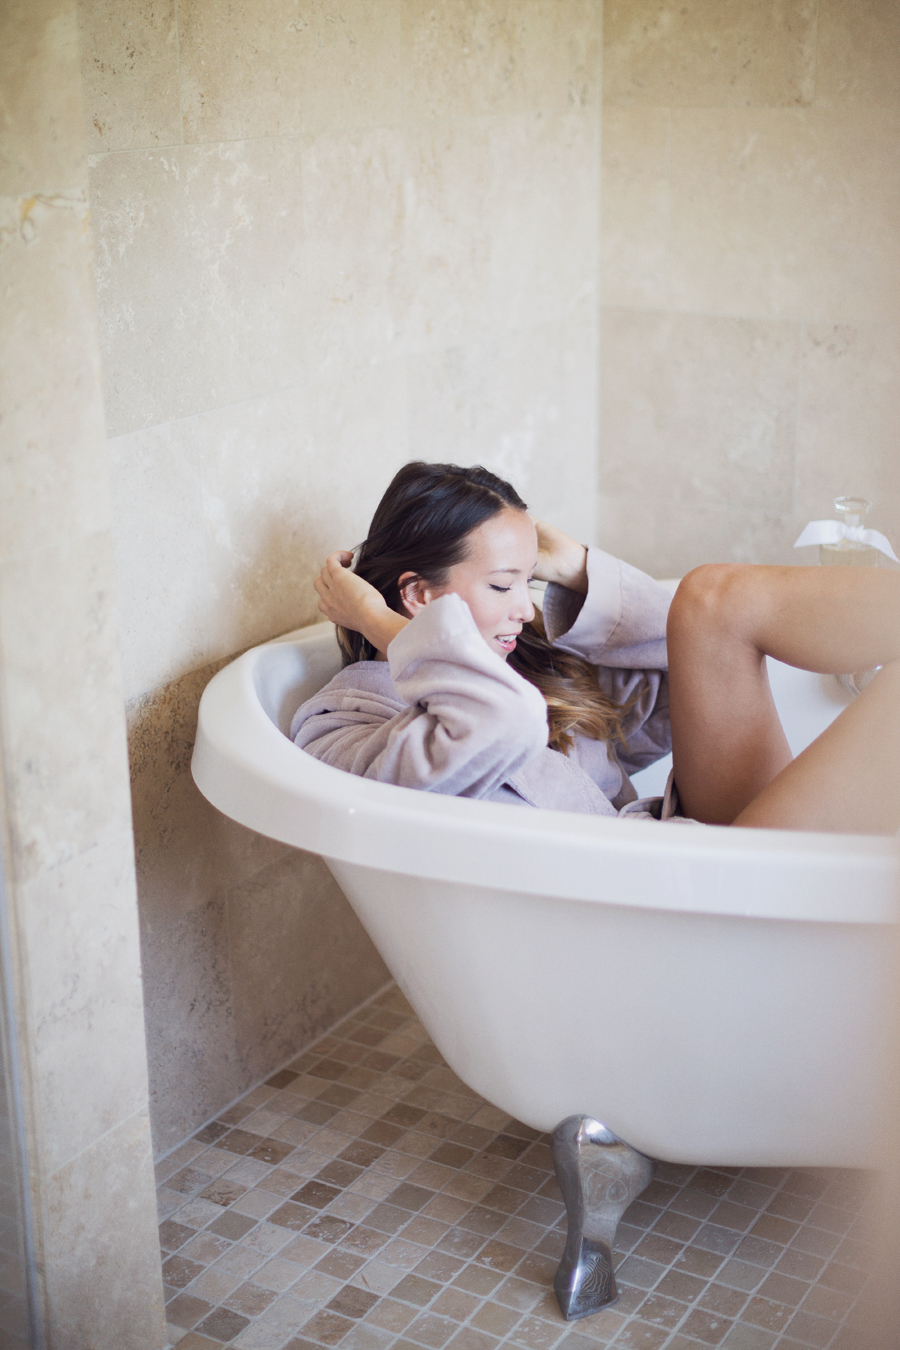 Girl in bathrobe in bathtub in bathroom playing with hair